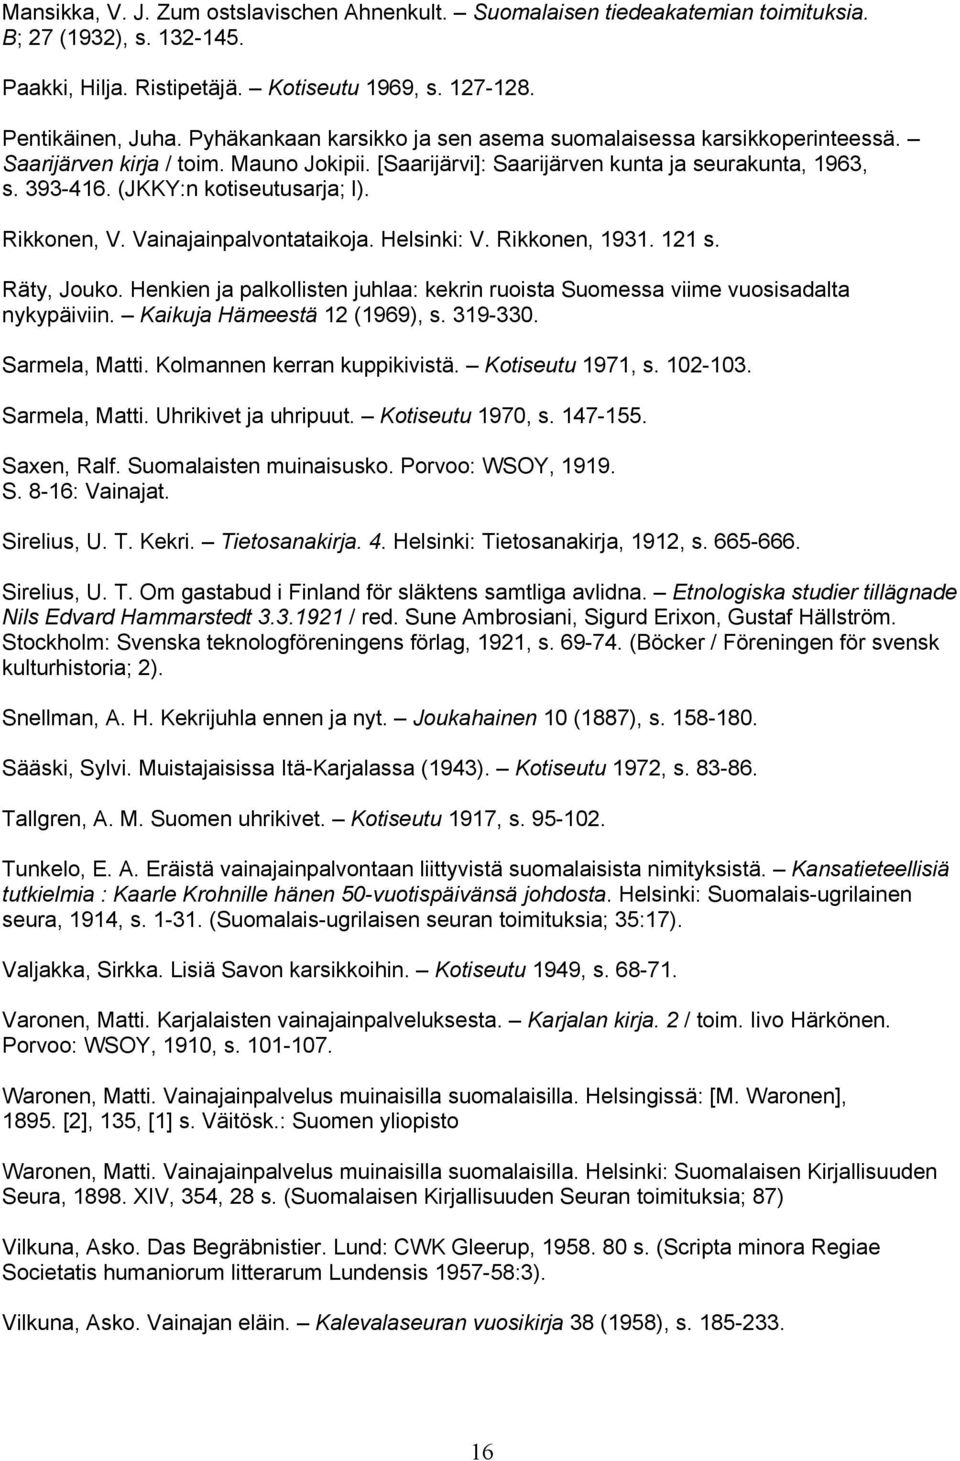 (JKKY:n kotiseutusarja; l). Rikkonen, V. Vainajainpalvontataikoja. Helsinki: V. Rikkonen, 1931. 121 s. Räty, Jouko.